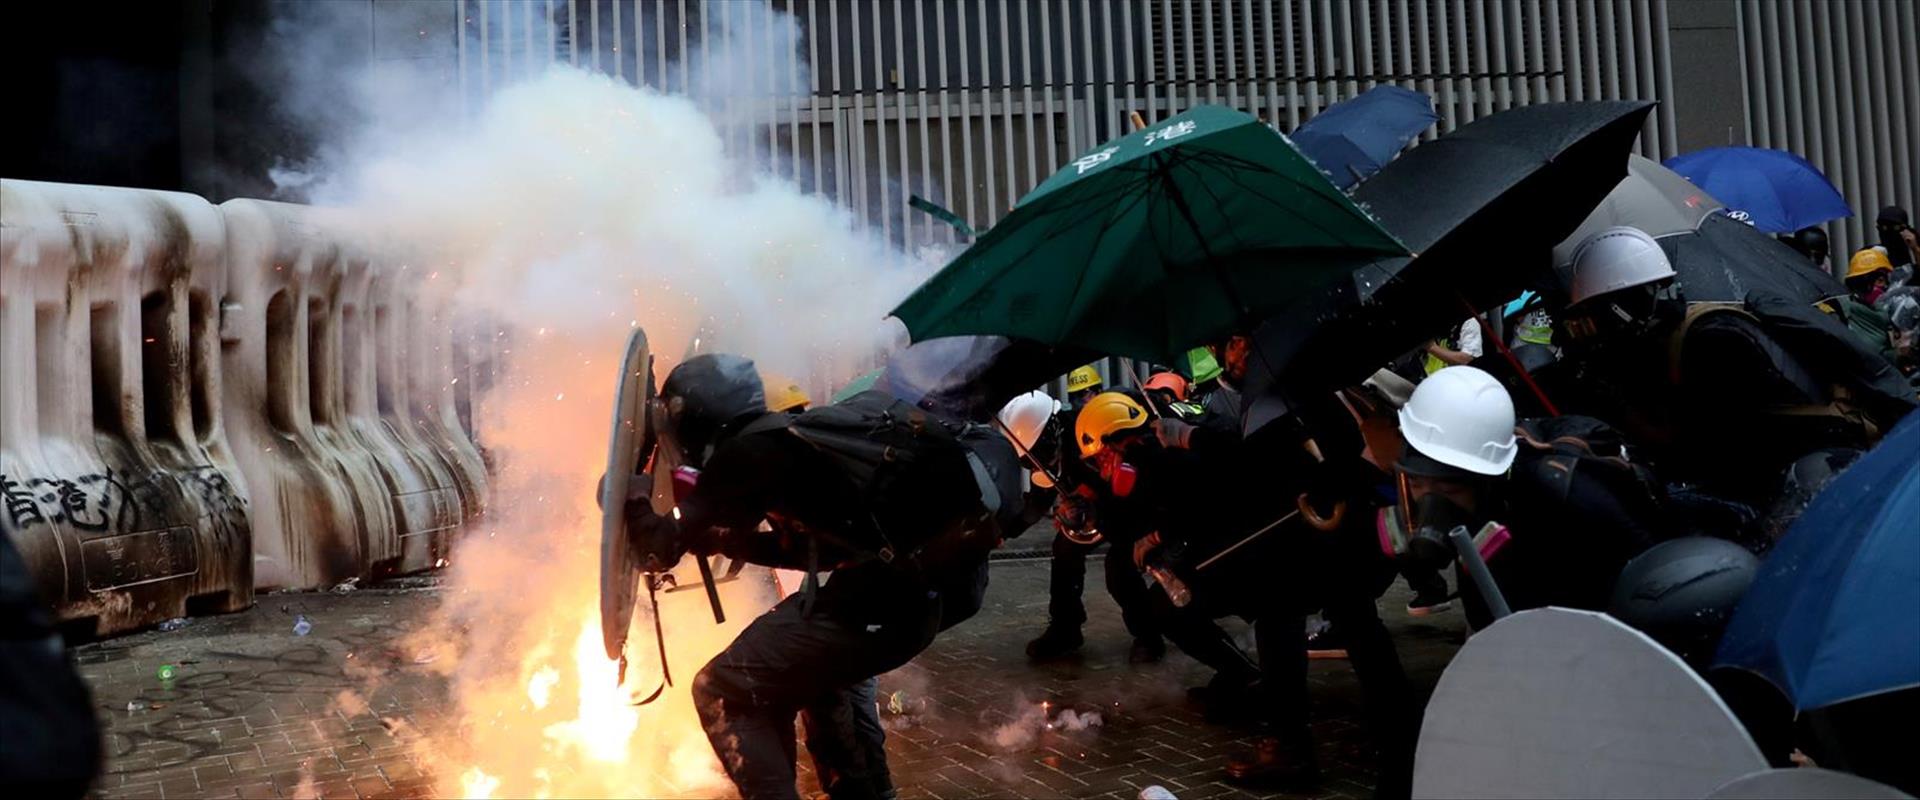 מחאות הפרו-דמוקרטים בהונג קונג, ספטמבר